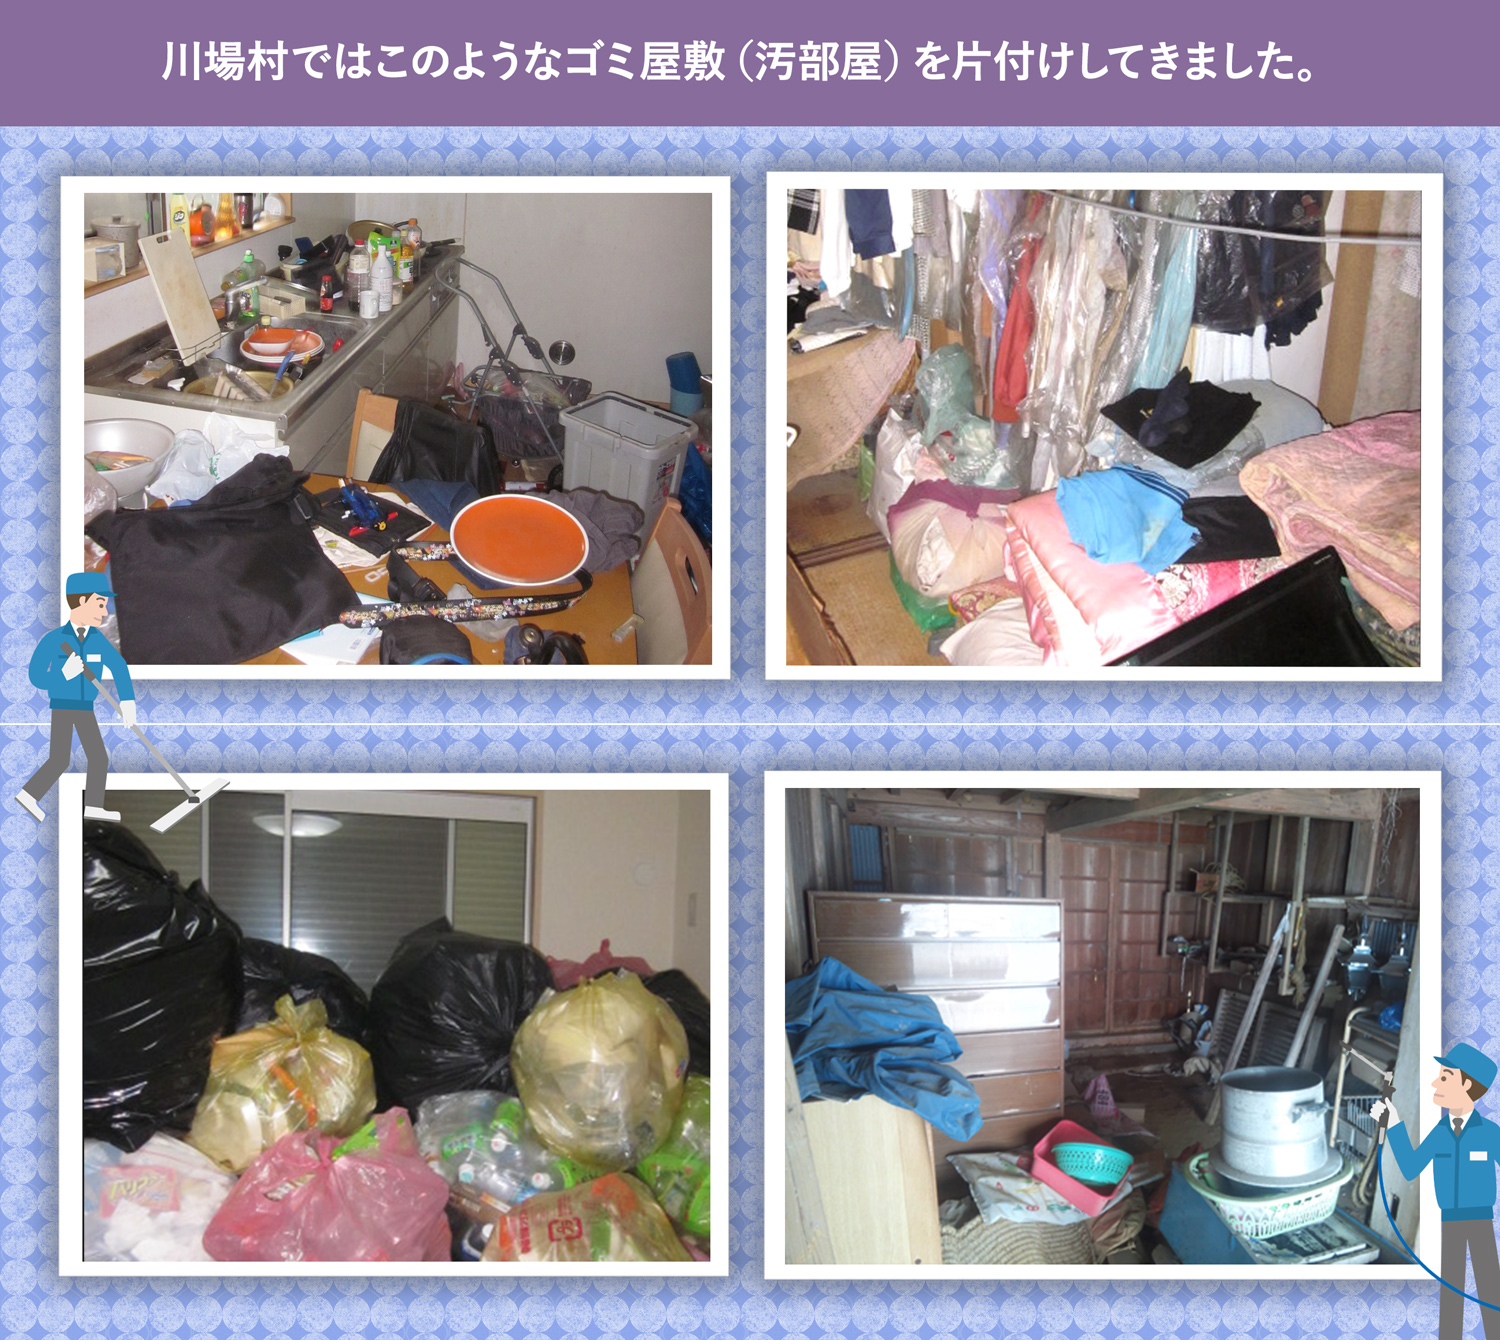 川場村で行ったで行ったごみ屋敷・汚部屋の片付けの一例